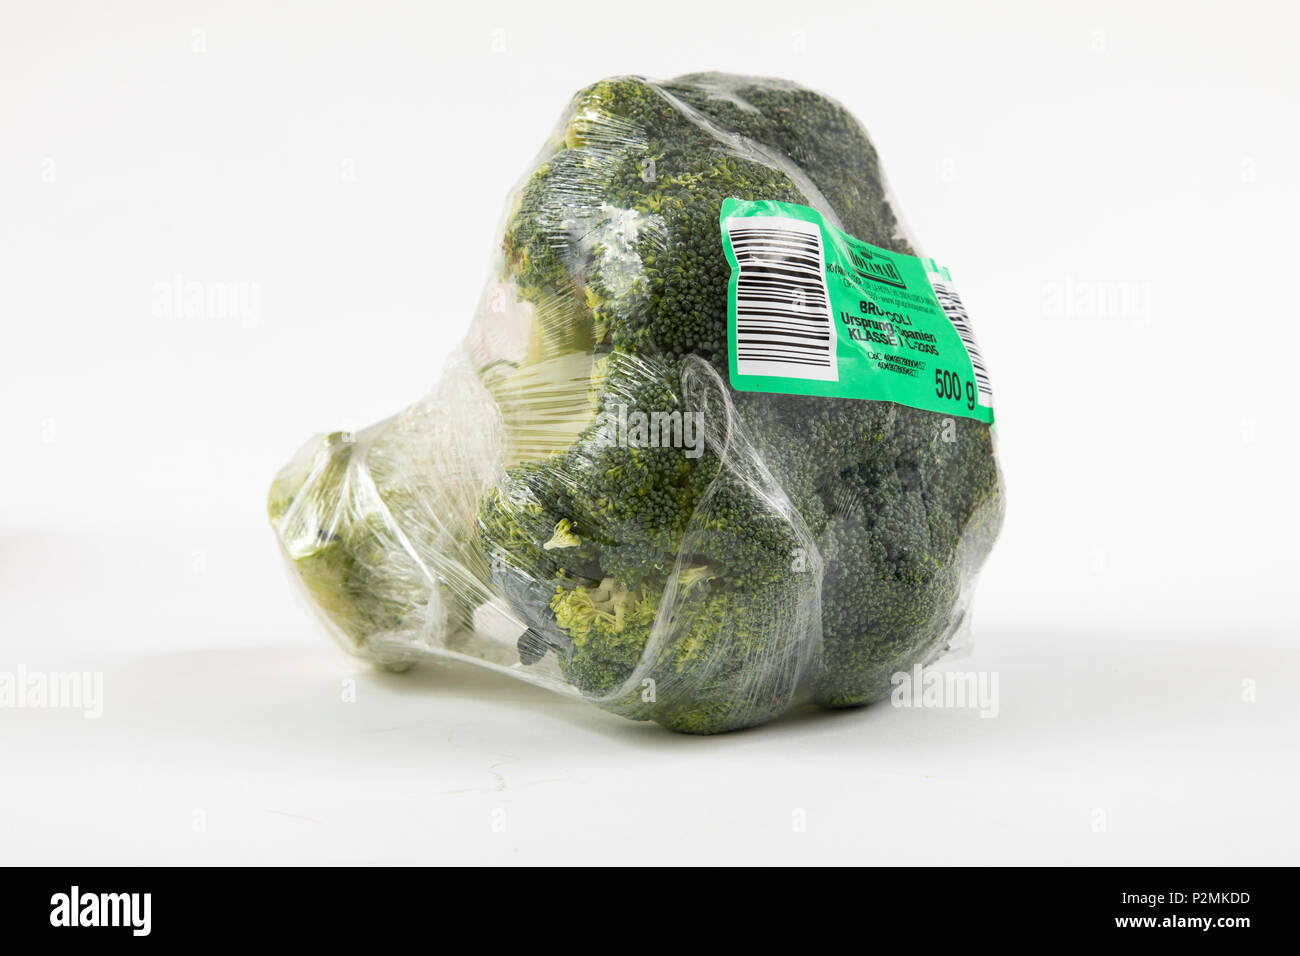 Produits frais, légumes emballés individuellement dans une pellicule plastique, toute la nourriture est disponible dans le même supermarché même sans emballage plastique, Broc Banque D'Images